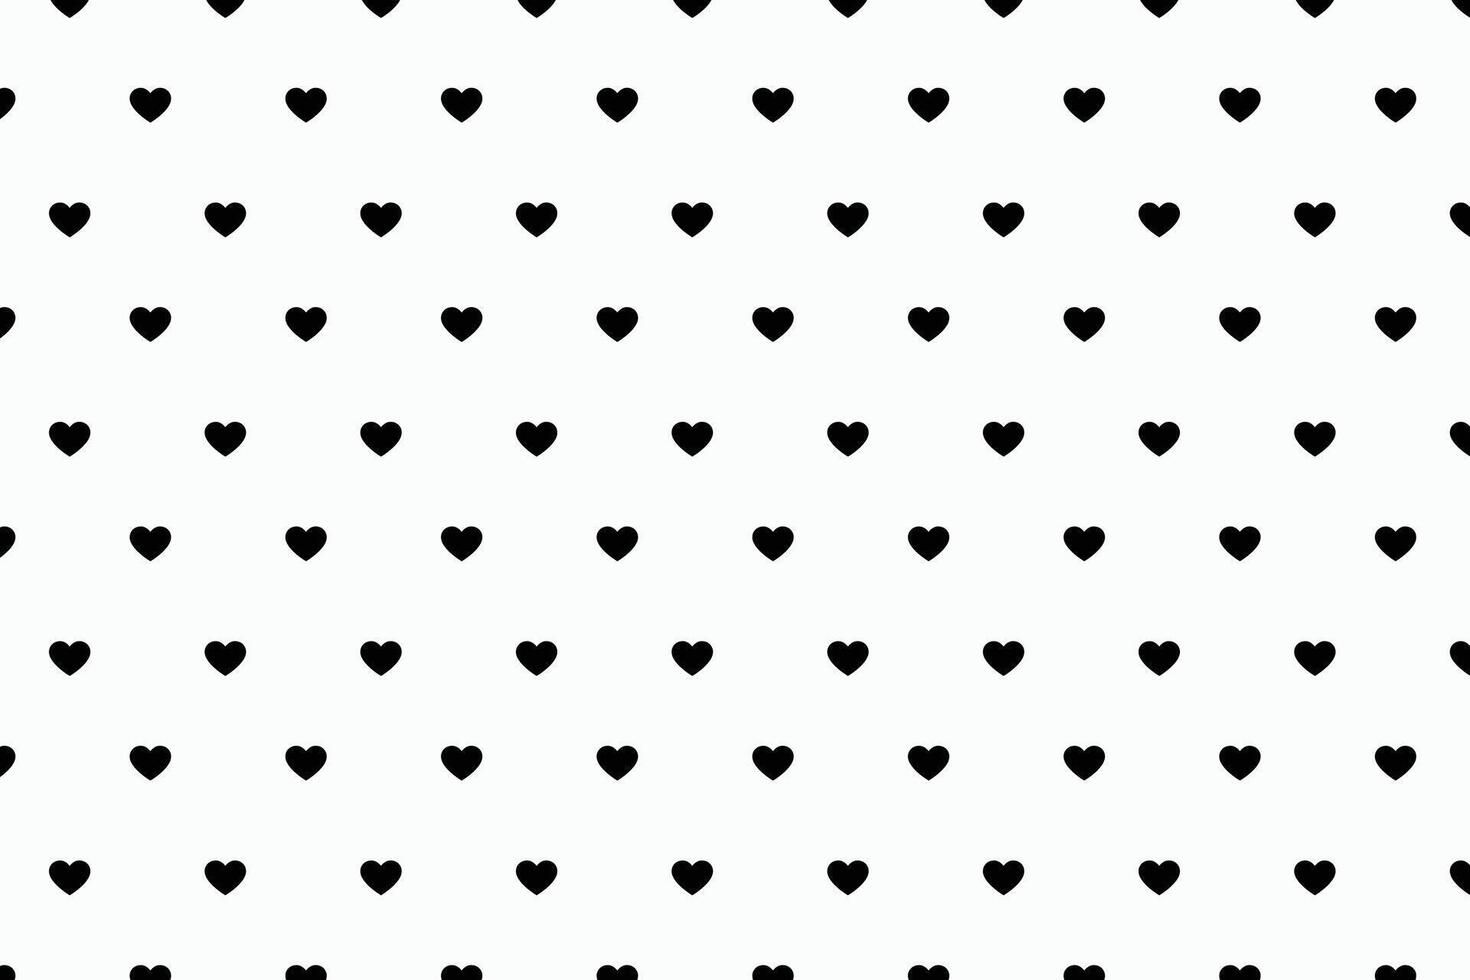 Facile et mignonne romantique cœur modèle pour valentines cartes vecteur